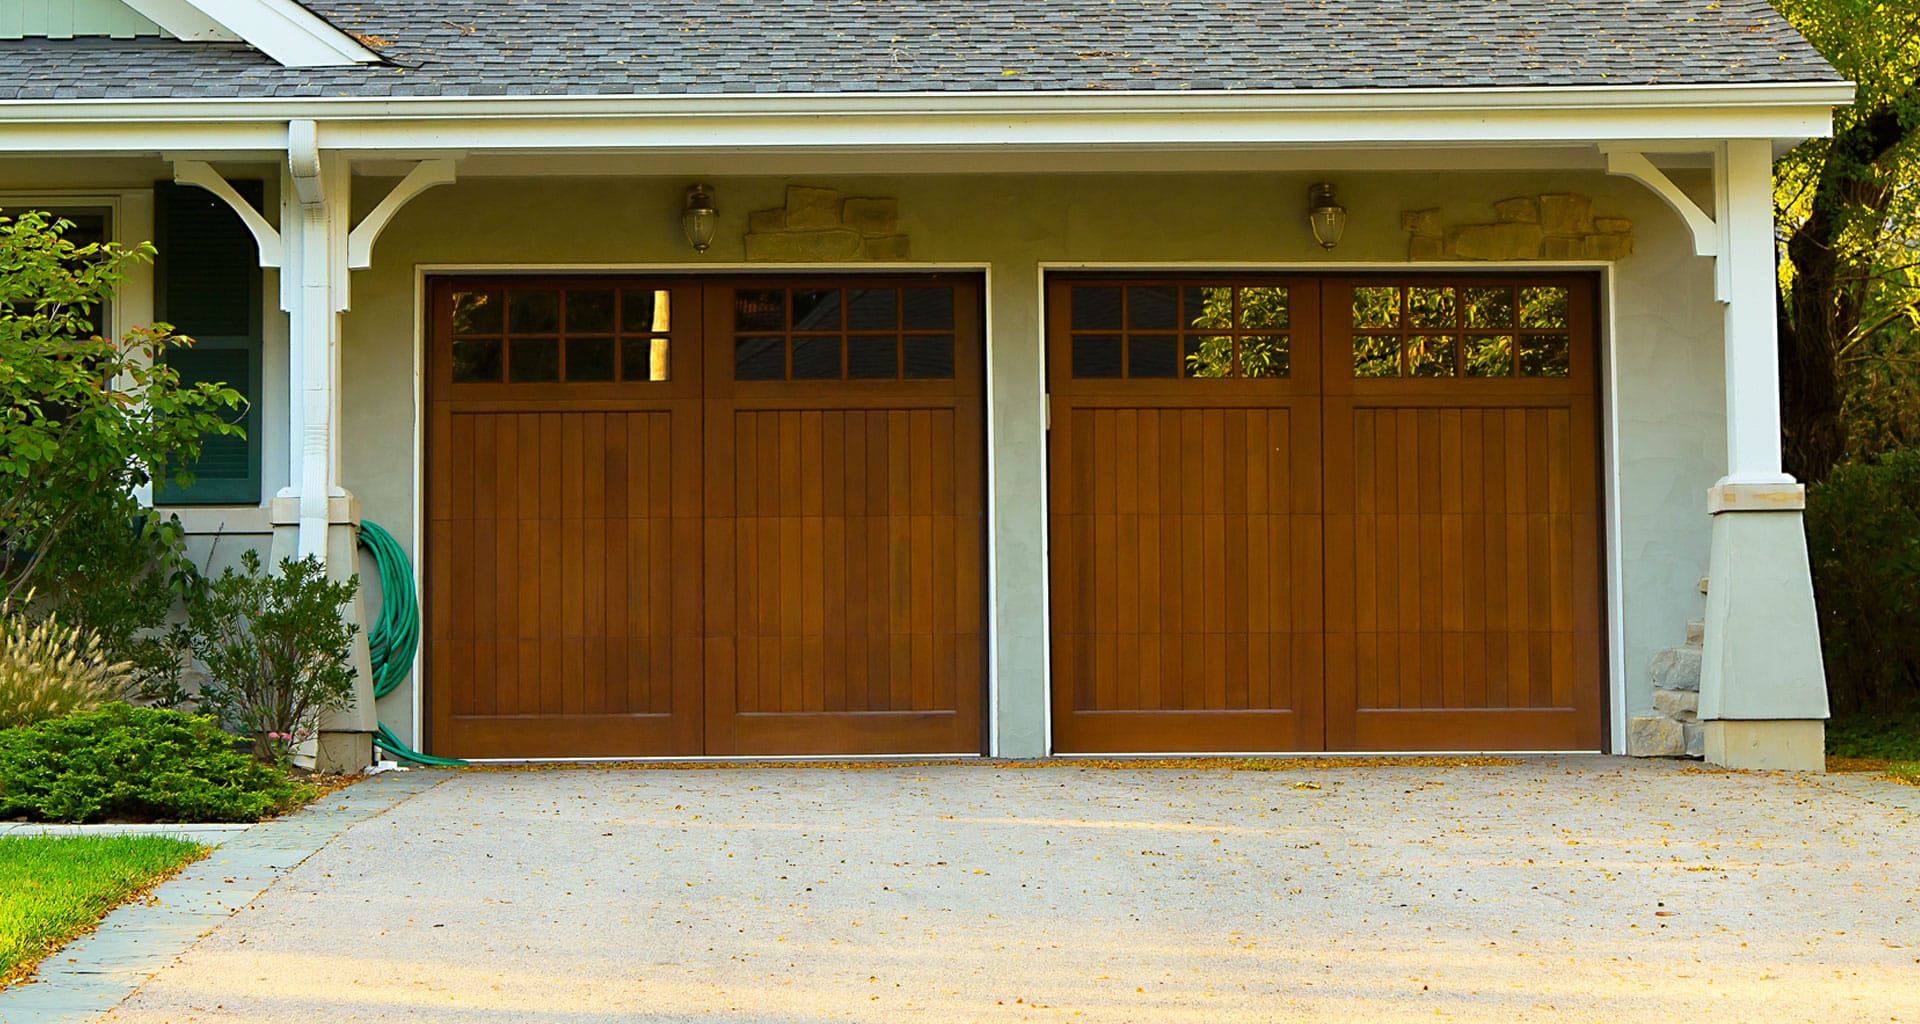 réalisation d'une double porte de garage en bois